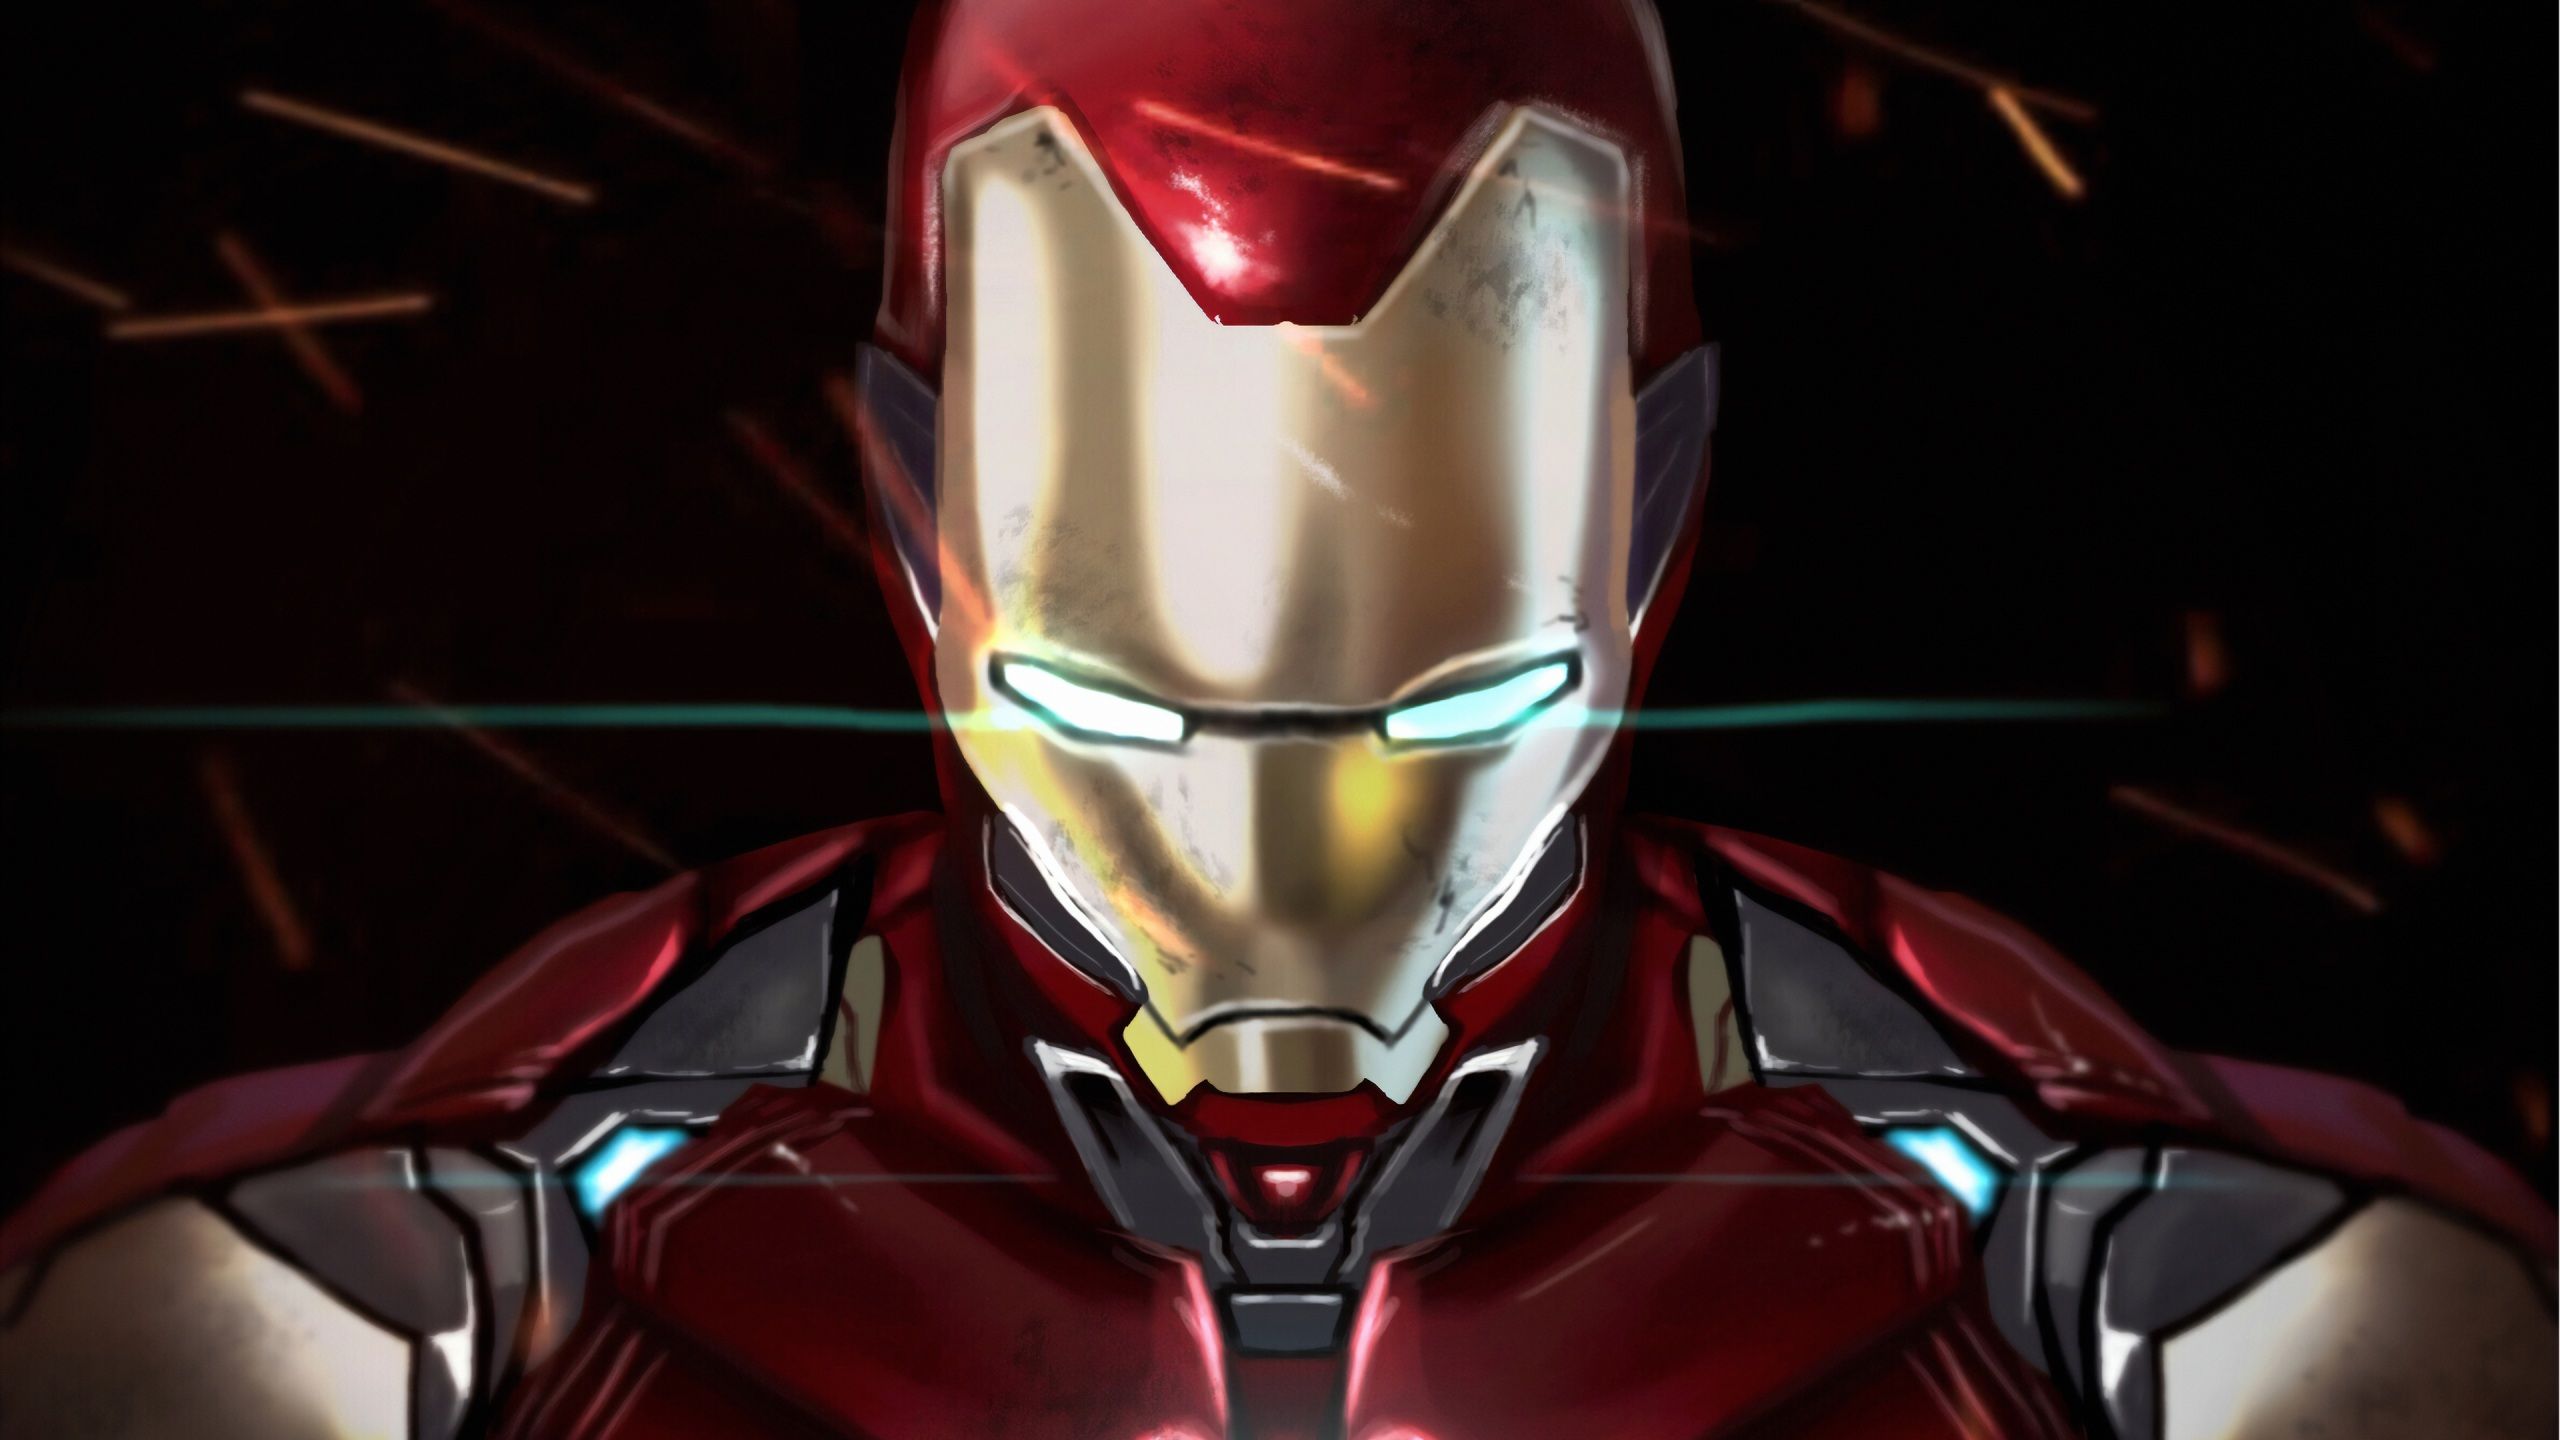 Wallpaper 4k Iron Man With Infinity Gauntlet 4k Wallpaper, Artwork Wallpaper, Digital Art Wallpaper, Hd Wallpaper, Iron Man Wallpaper, Superheroes Wallpaper